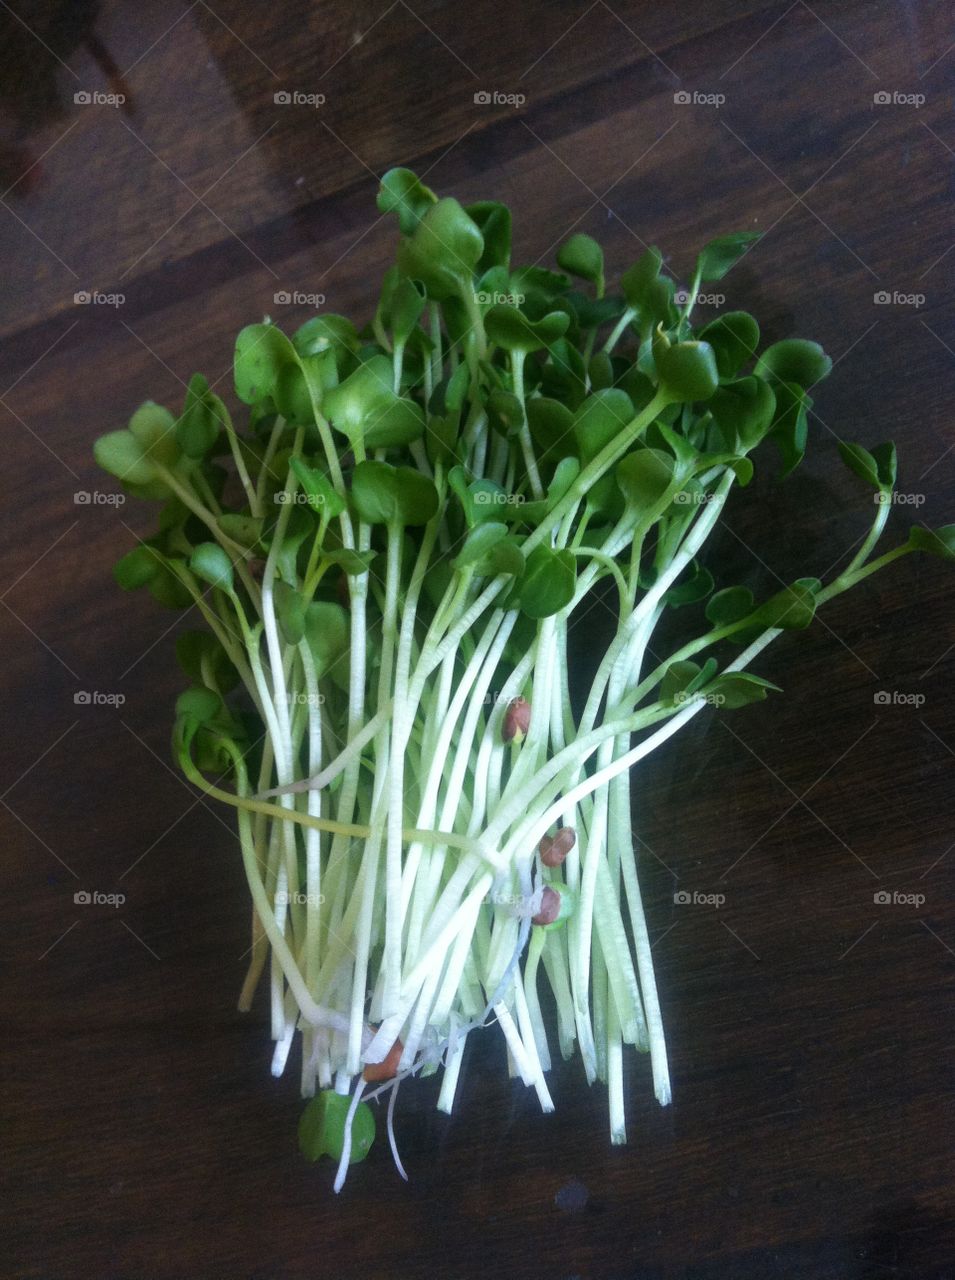 Radish sprouts